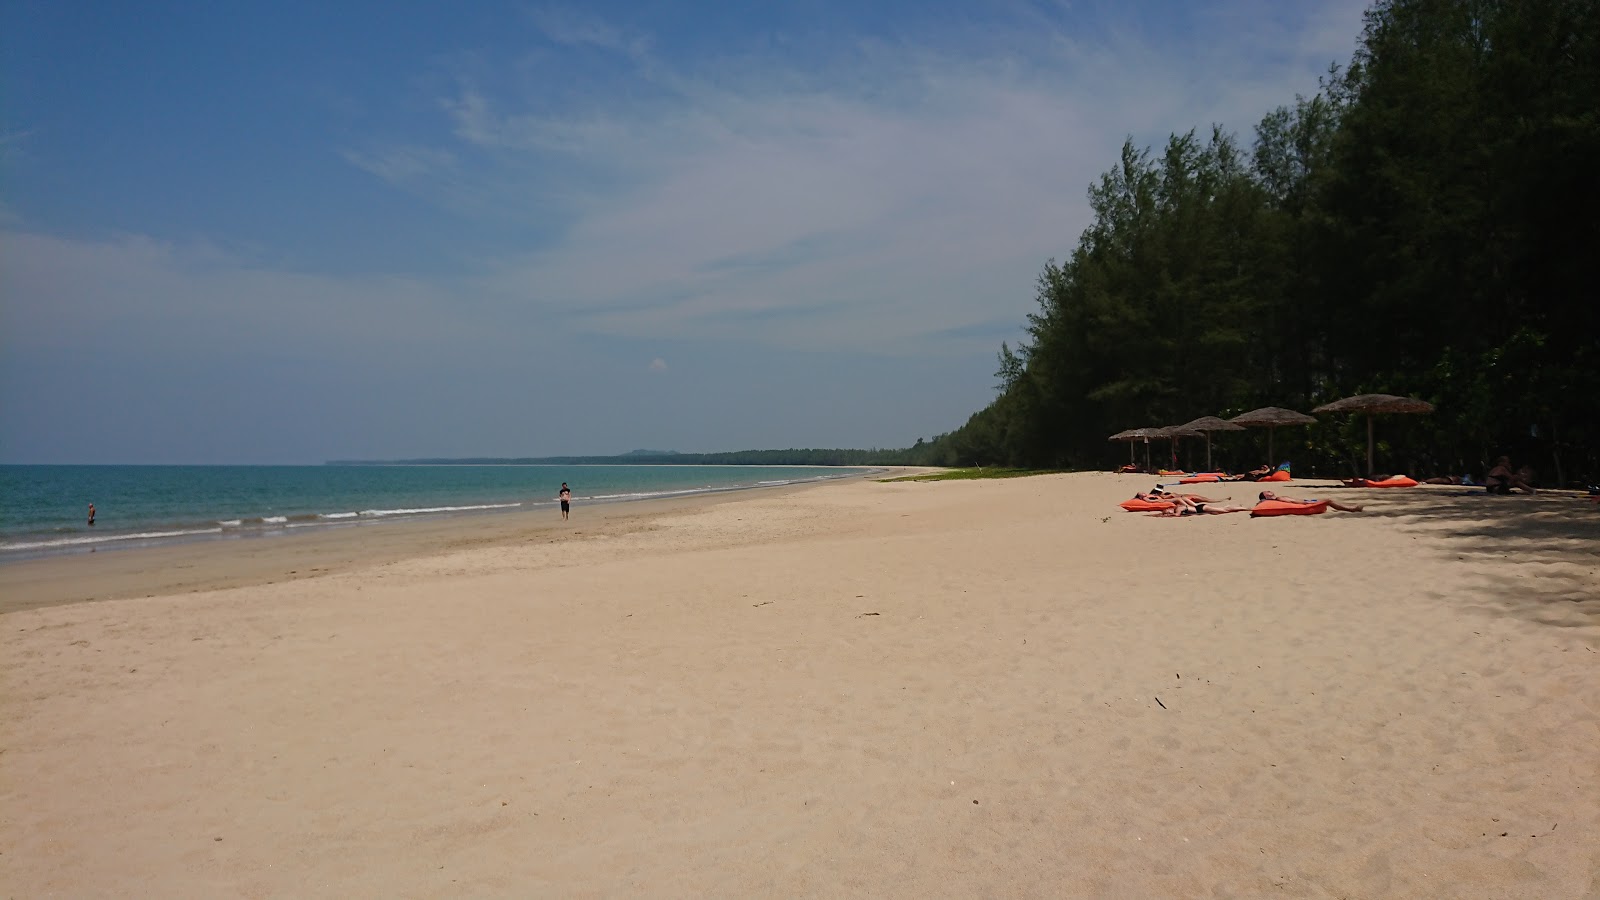 Zdjęcie Hapla Beach - popularne miejsce wśród znawców relaksu